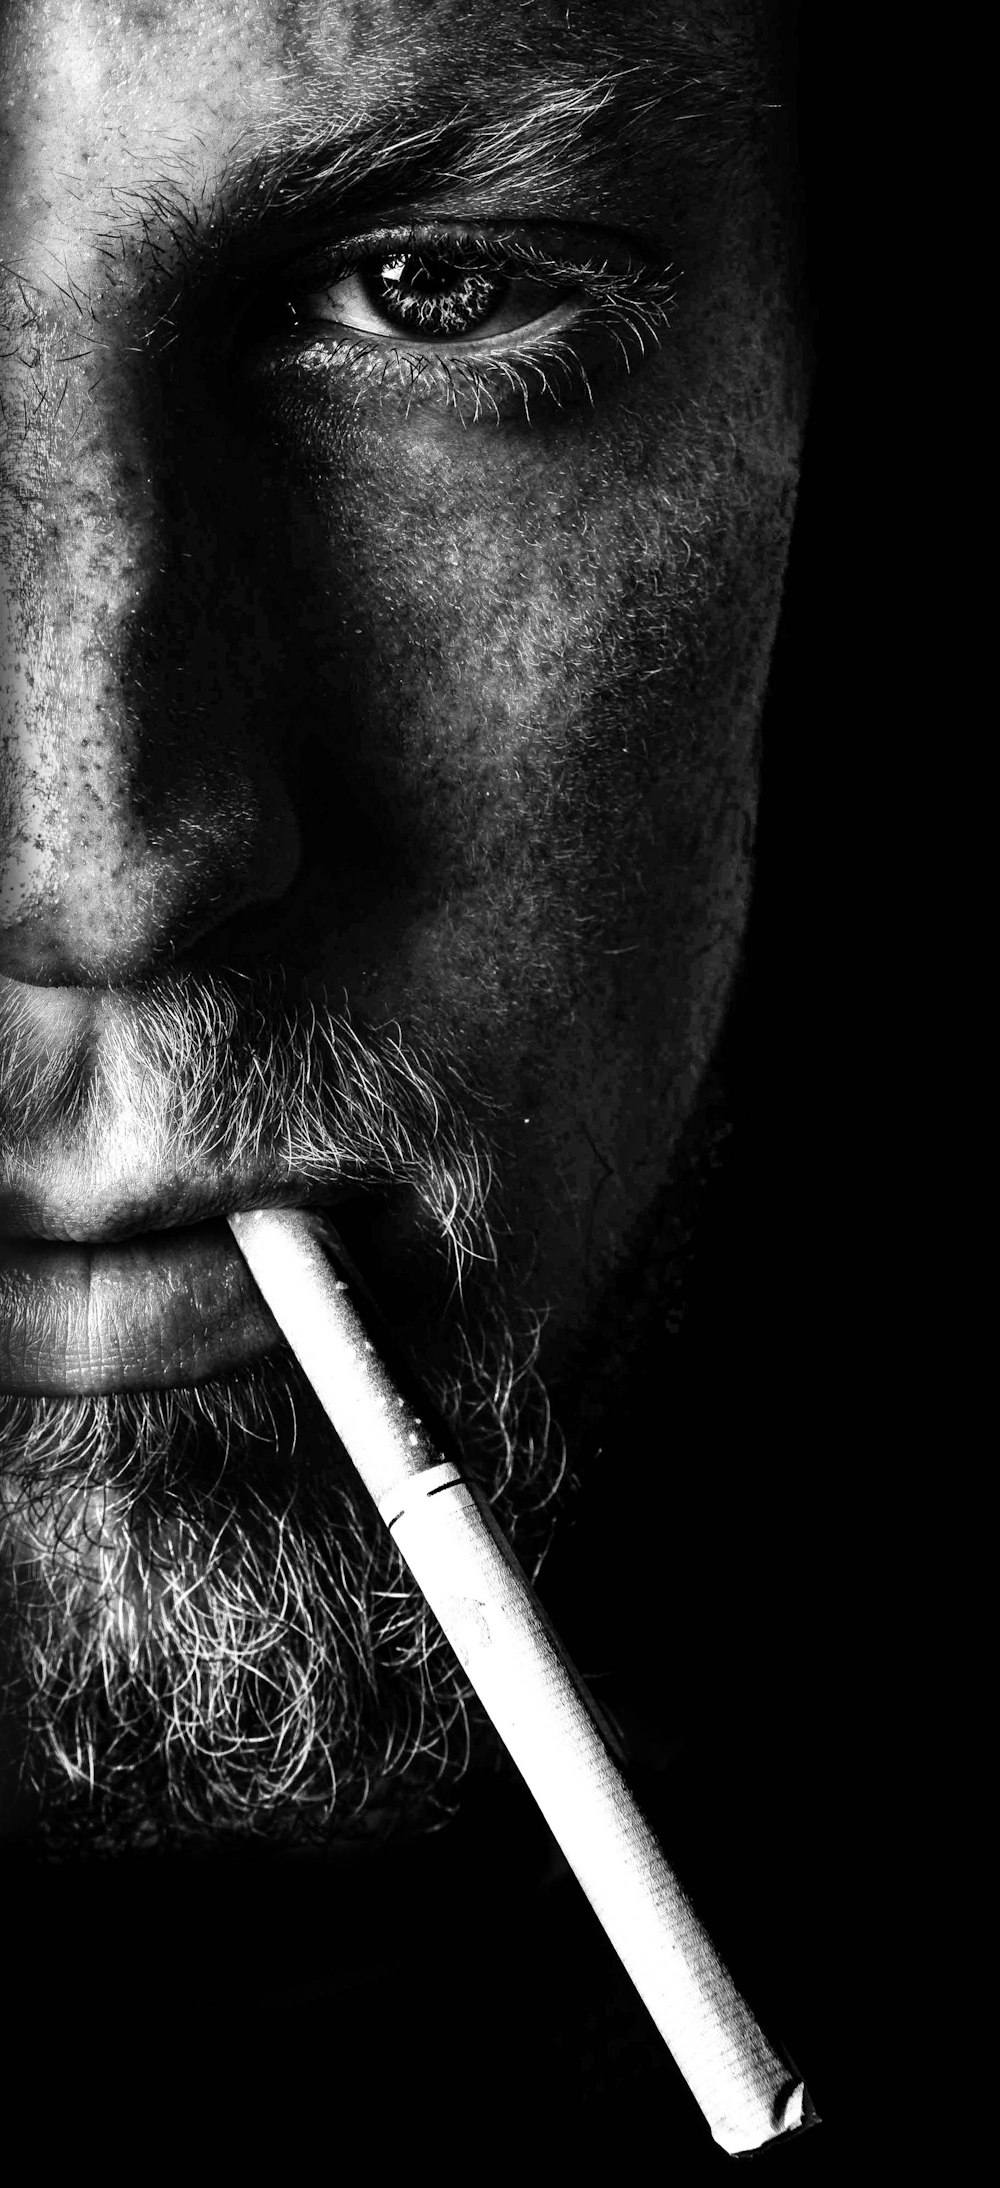 그레이스케일 사진에서 담배를 피우는 남자